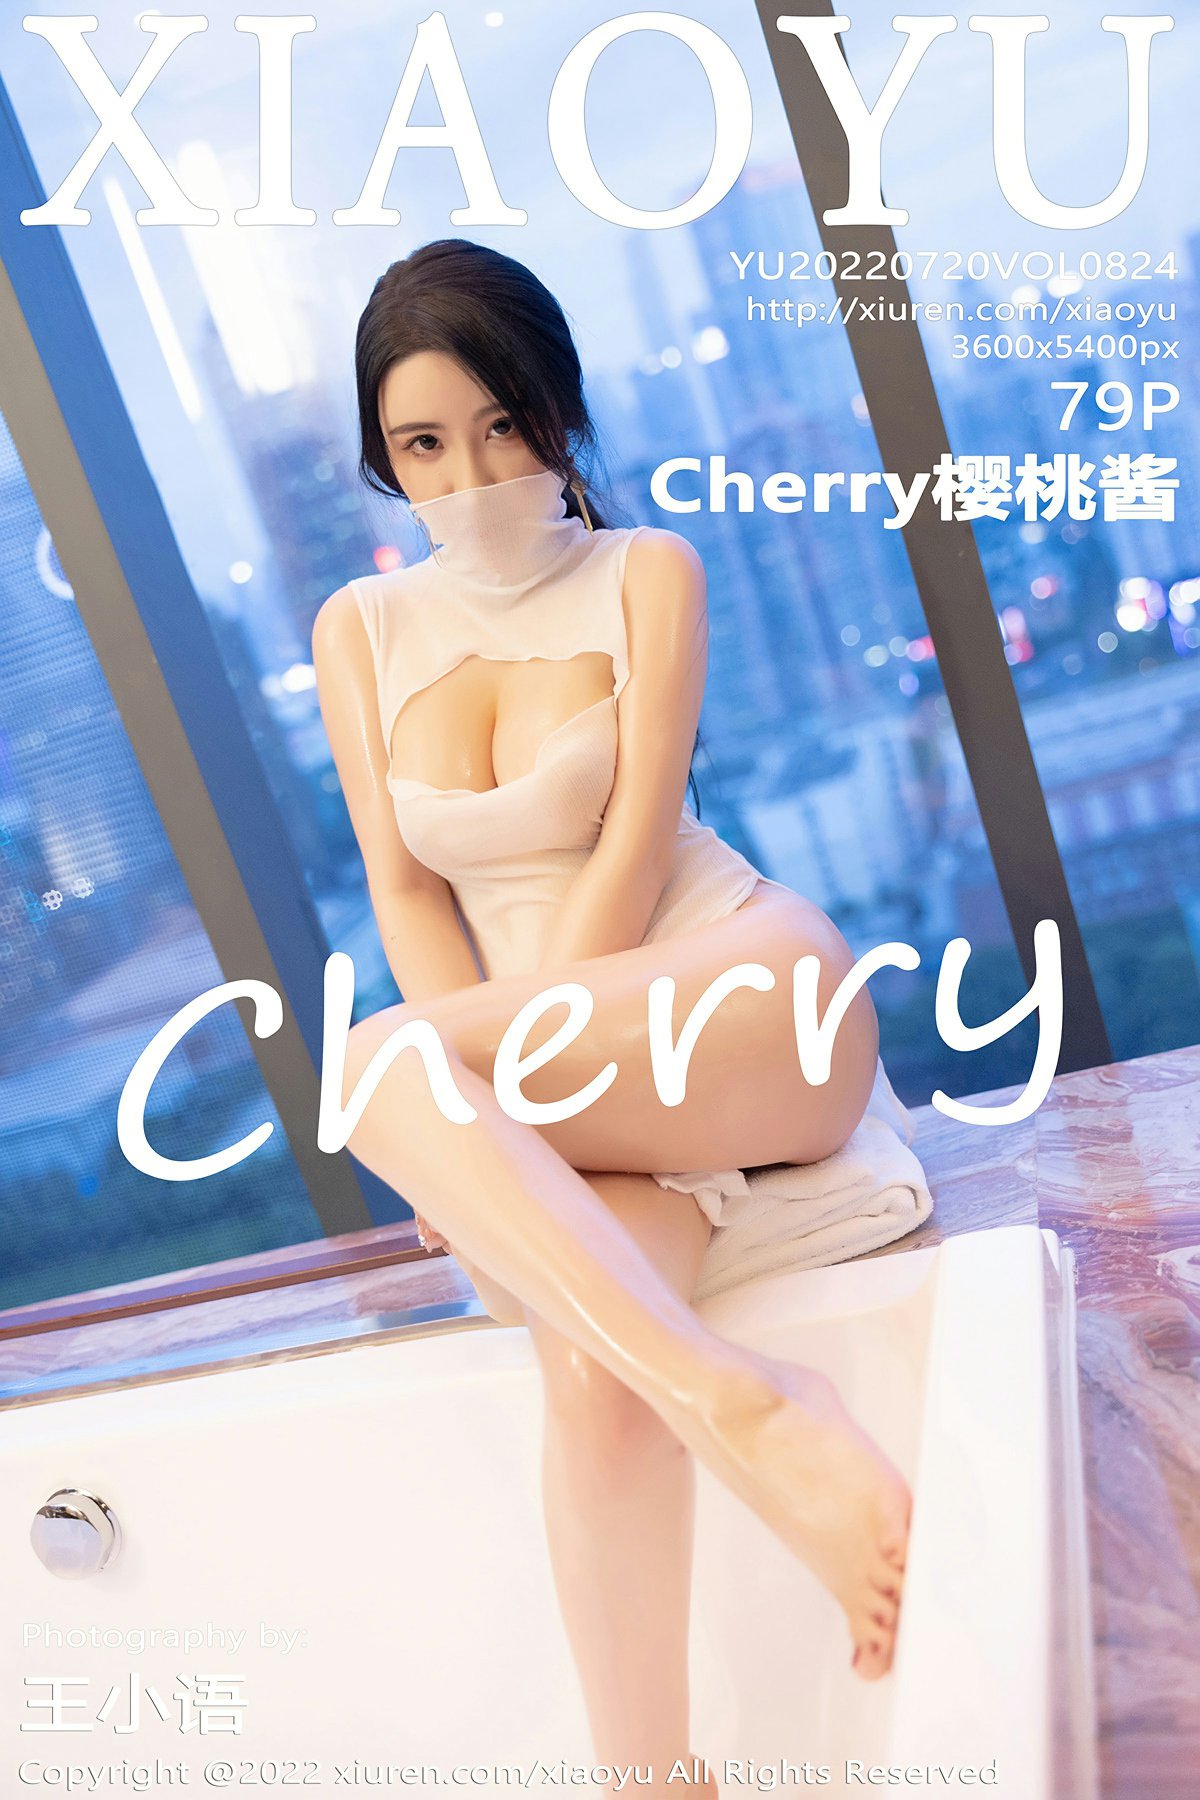 [XIAOYU语画界] 2022.07.20 VOL.824 Cherry樱桃酱 [79+1P]-第1张图片-宅男套图吧